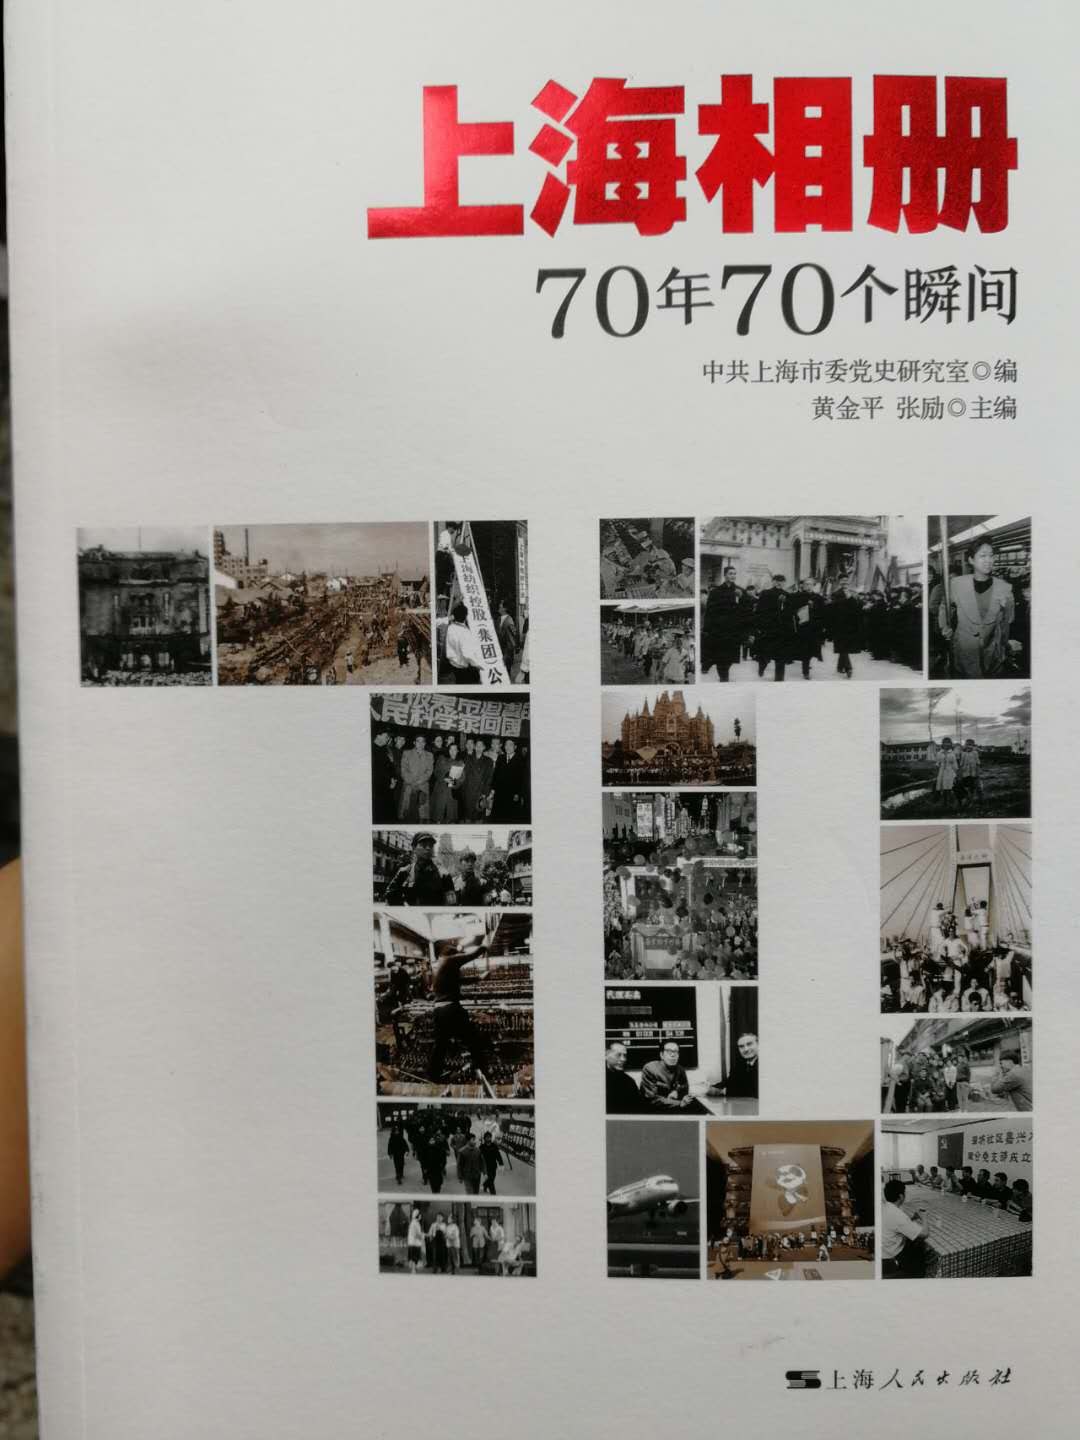 上海相册 70年70个瞬间